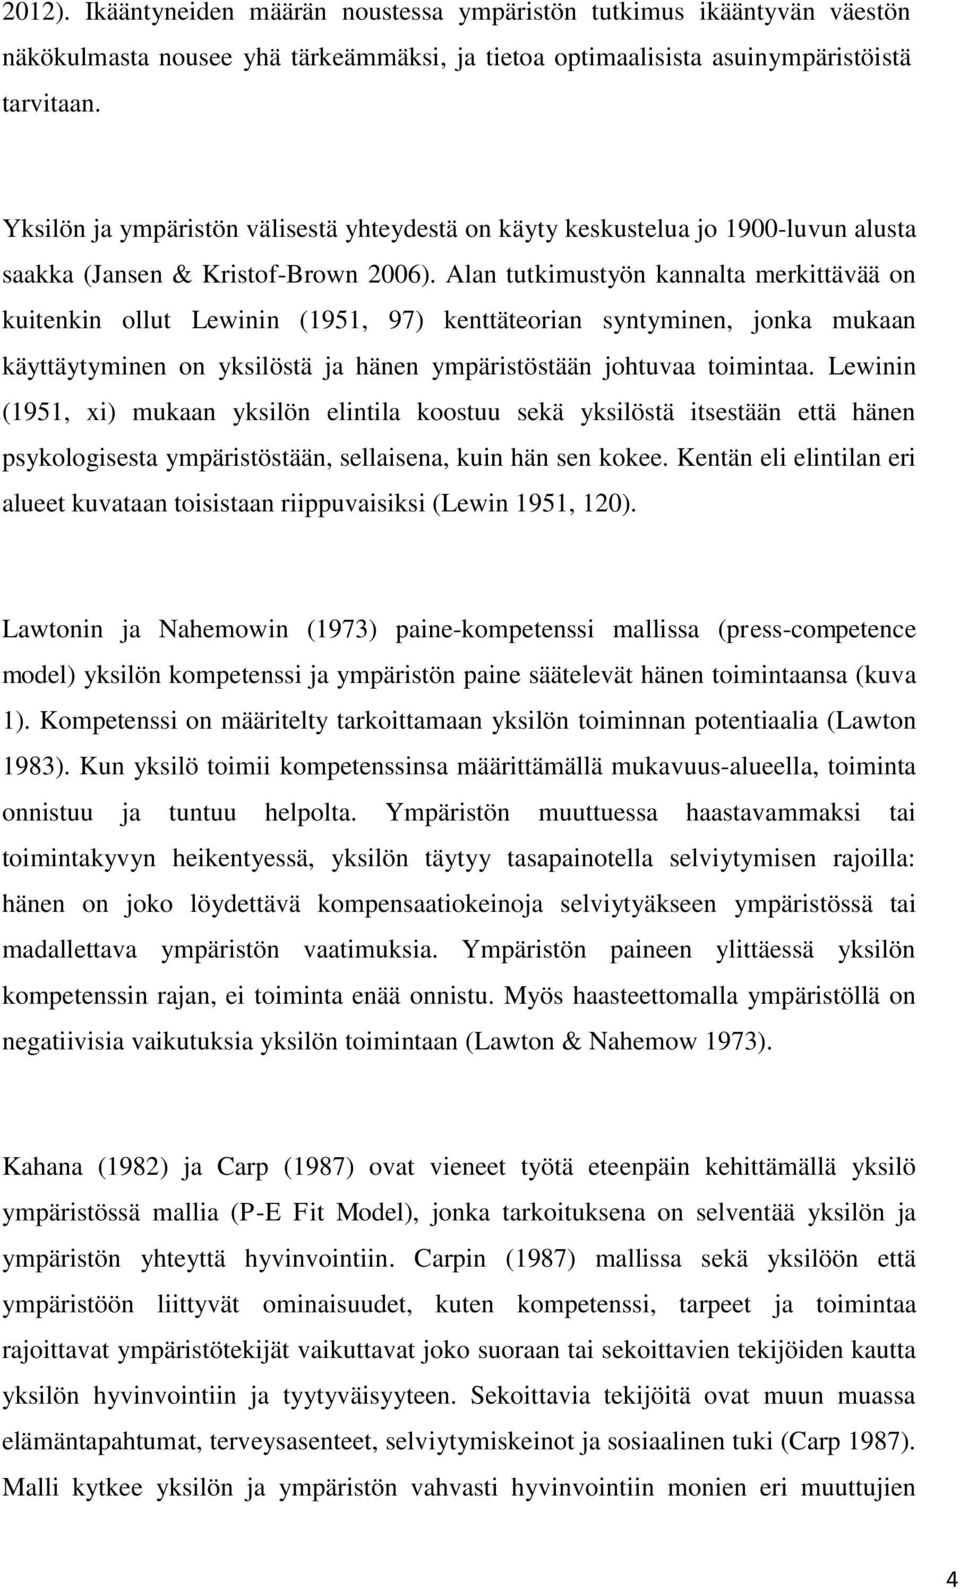 Alan tutkimustyön kannalta merkittävää on kuitenkin ollut Lewinin (1951, 97) kenttäteorian syntyminen, jonka mukaan käyttäytyminen on yksilöstä ja hänen ympäristöstään johtuvaa toimintaa.